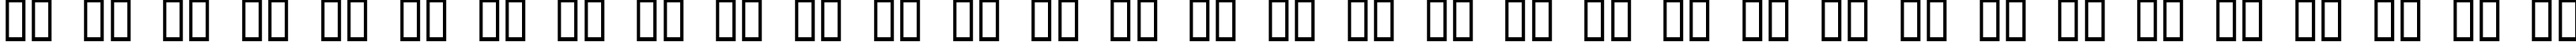 Пример написания русского алфавита шрифтом Old Oak